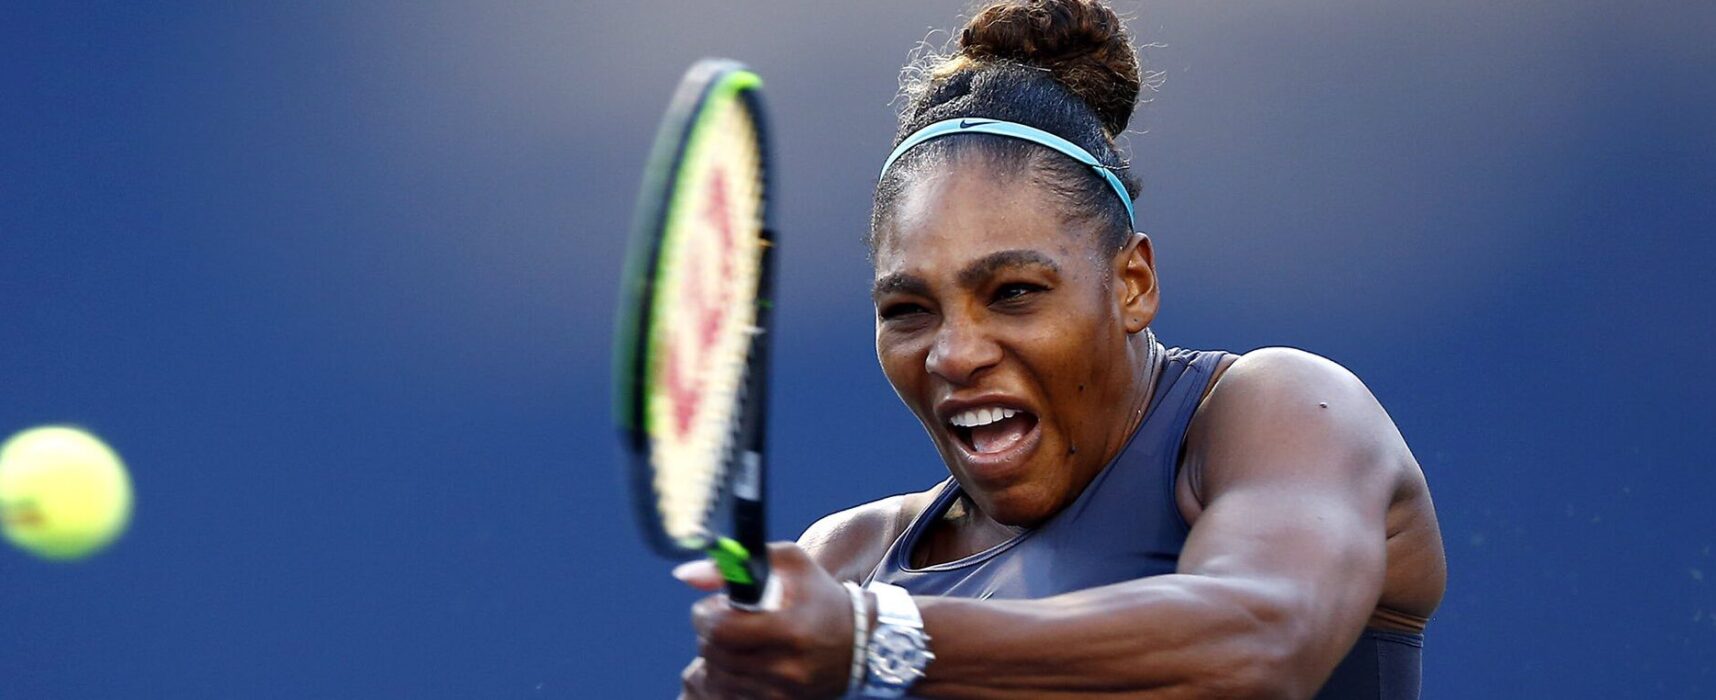 Serena Williams afirma ser desvalorizada como mulher negra no tênis